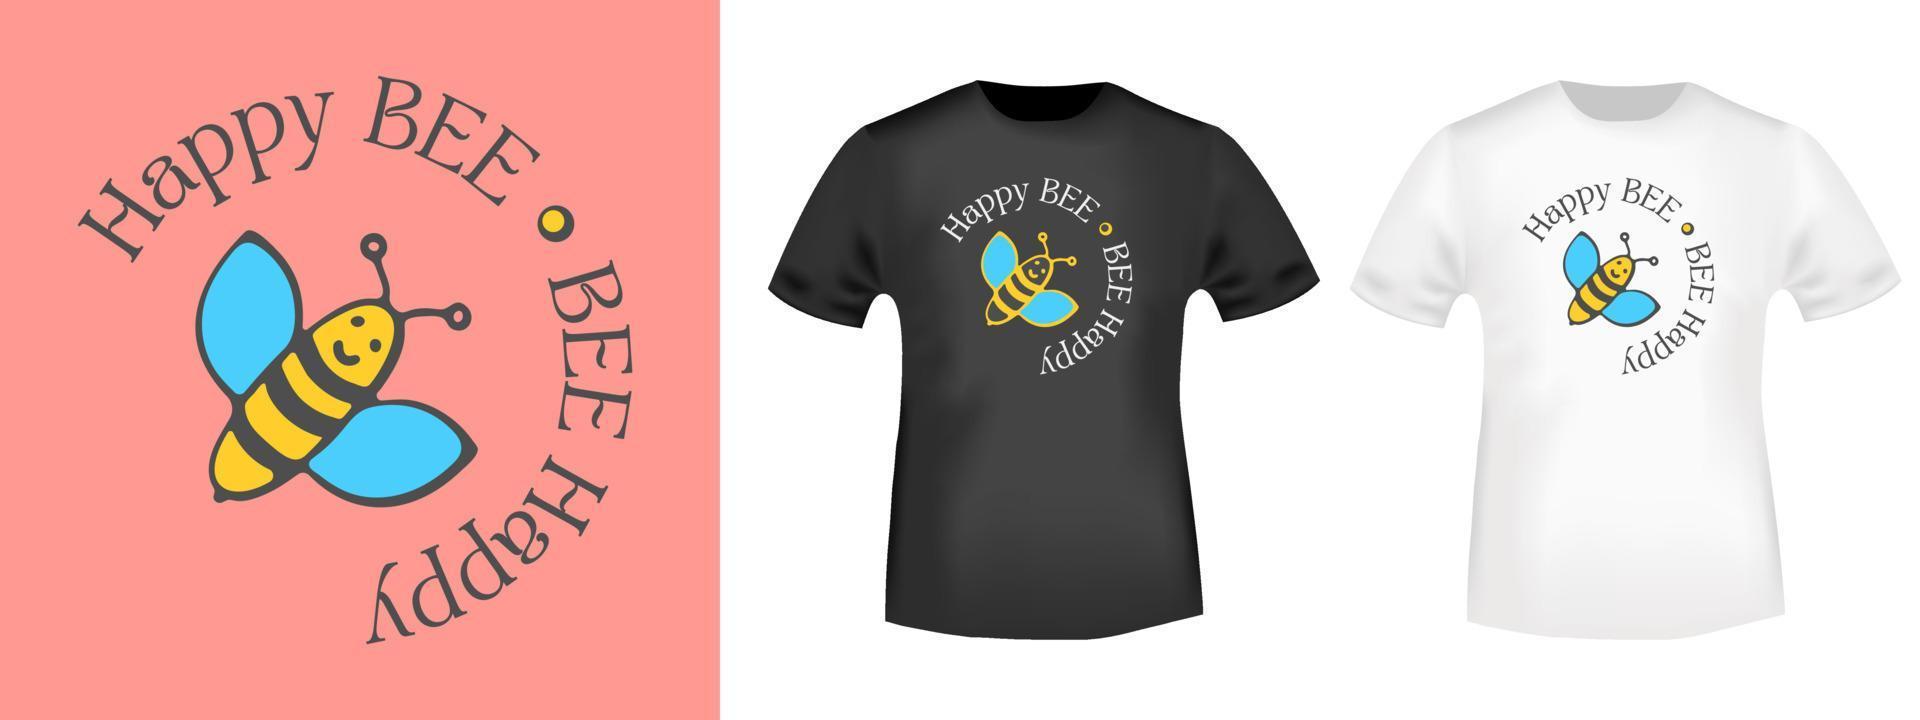 happy bee - bee happy - typografi för t-shirtstämpel, t-shirt, applikation, märke eller annan tryckprodukt. vektor illustration.